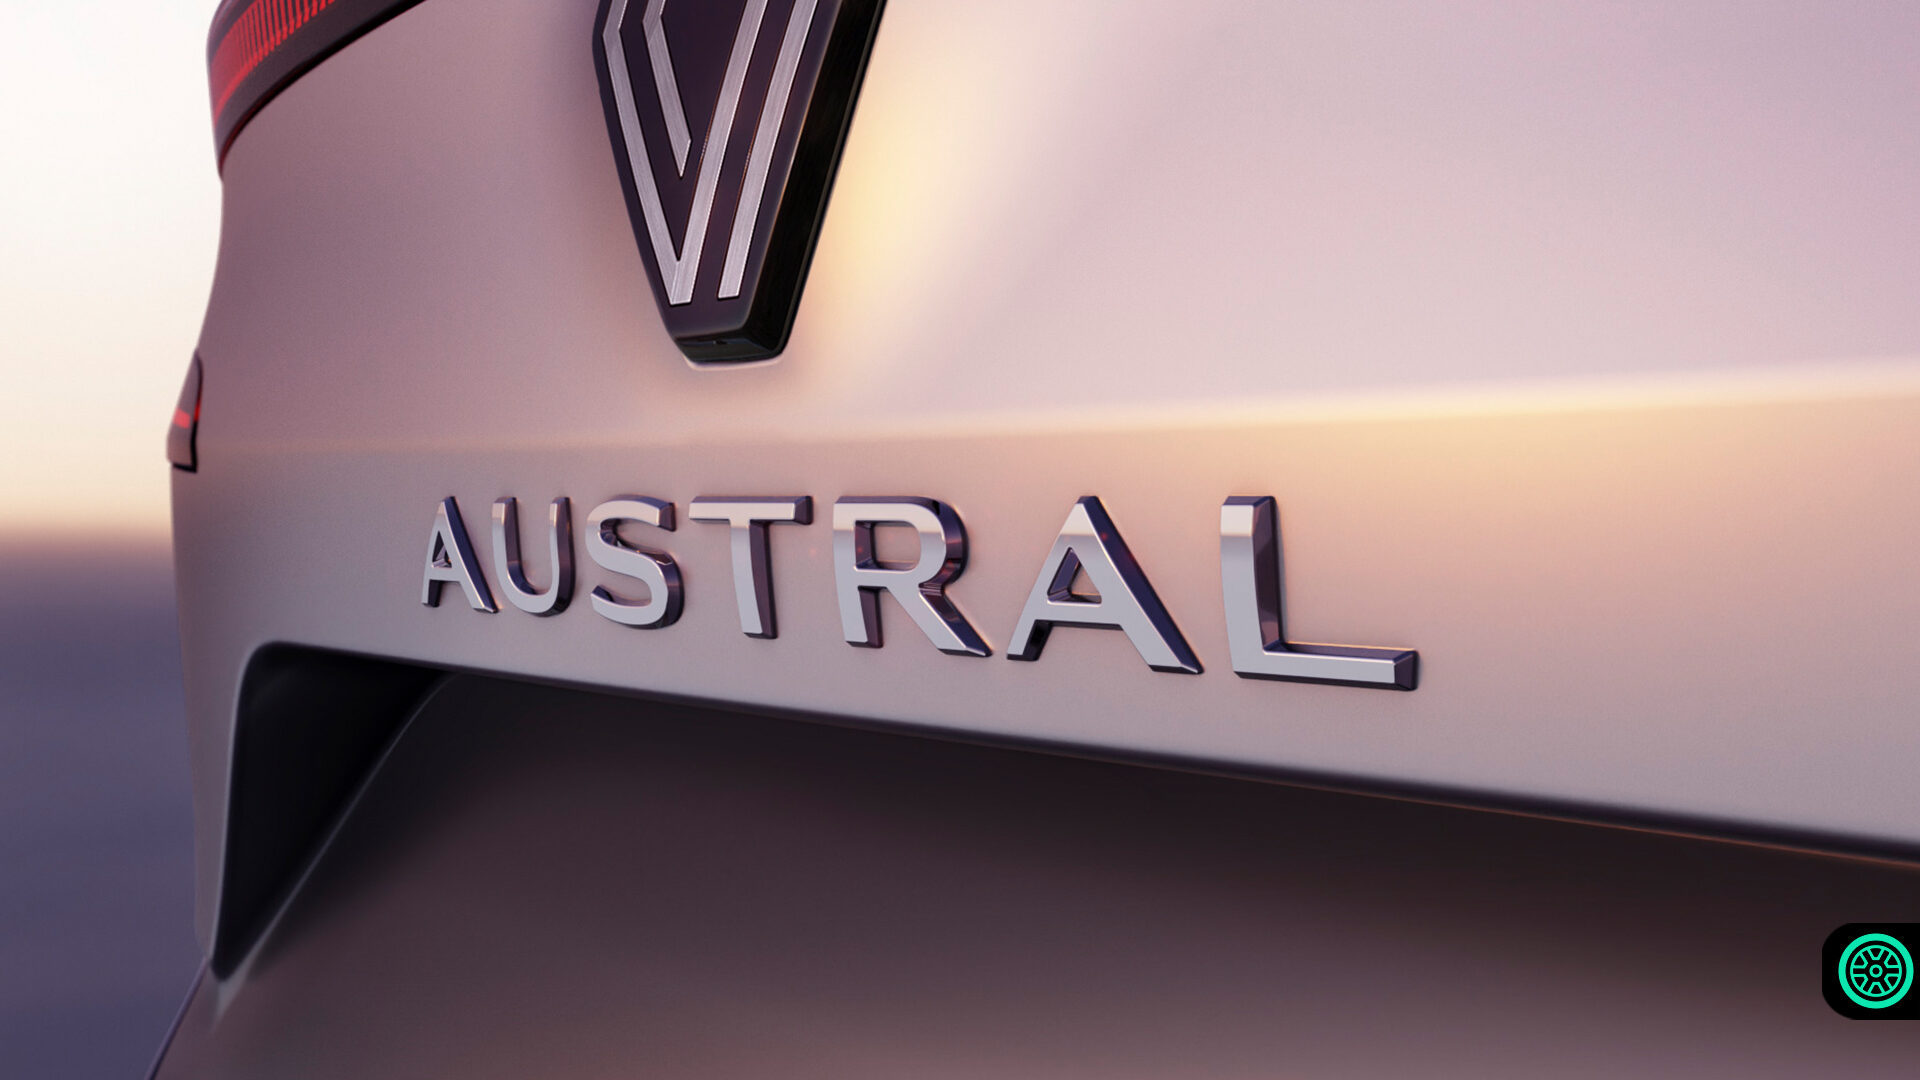 2022 Renault Austral modelinden yeni görüntü! 1